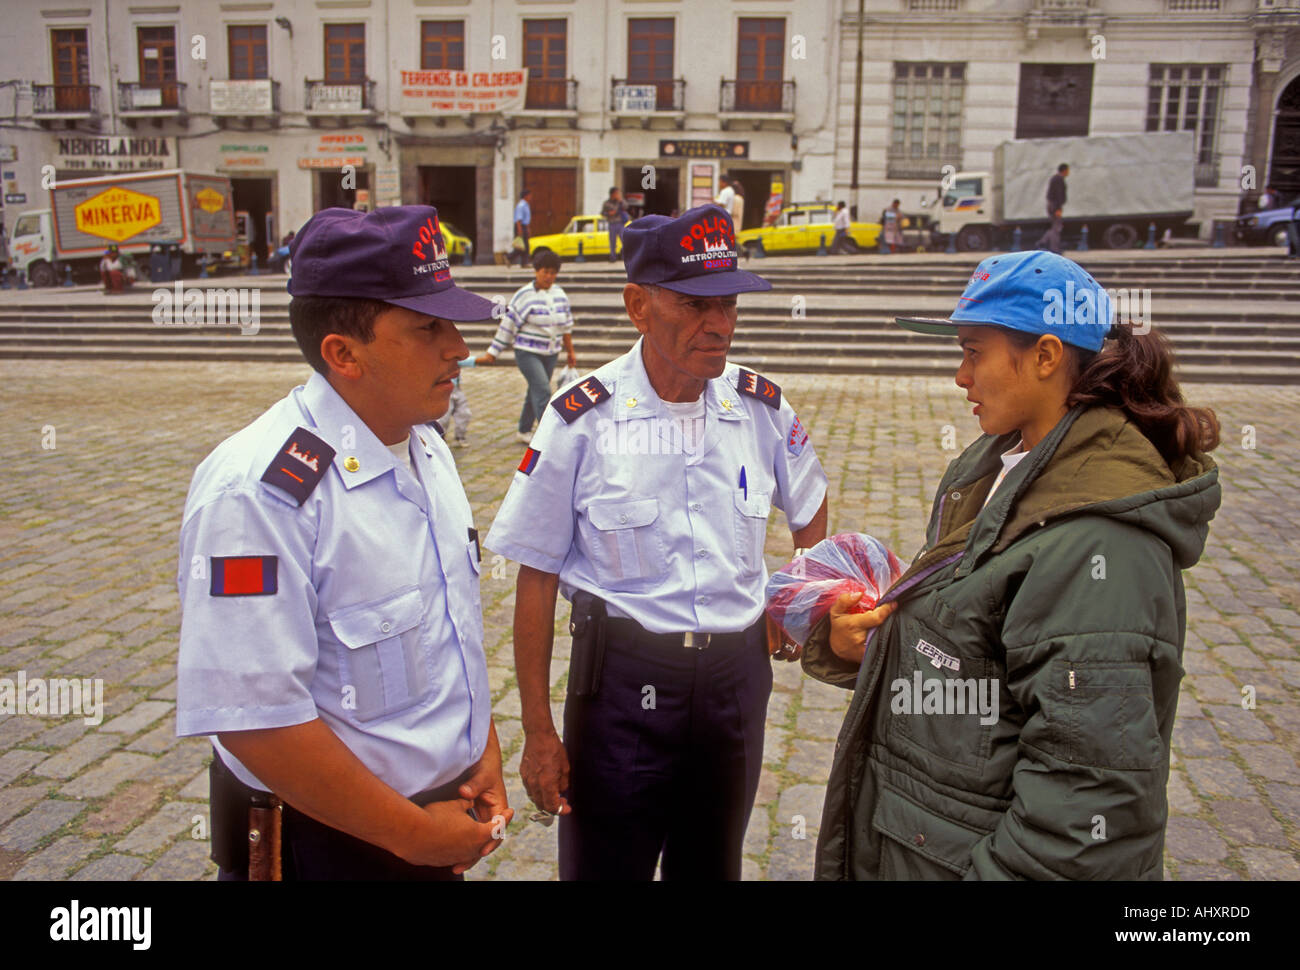 Ecuadorans, 2, two, metropolitan policemen, policemen, police officers, Plaza de San Francisco, Quito, Pichincha Province, Ecuador, South America Stock Photo